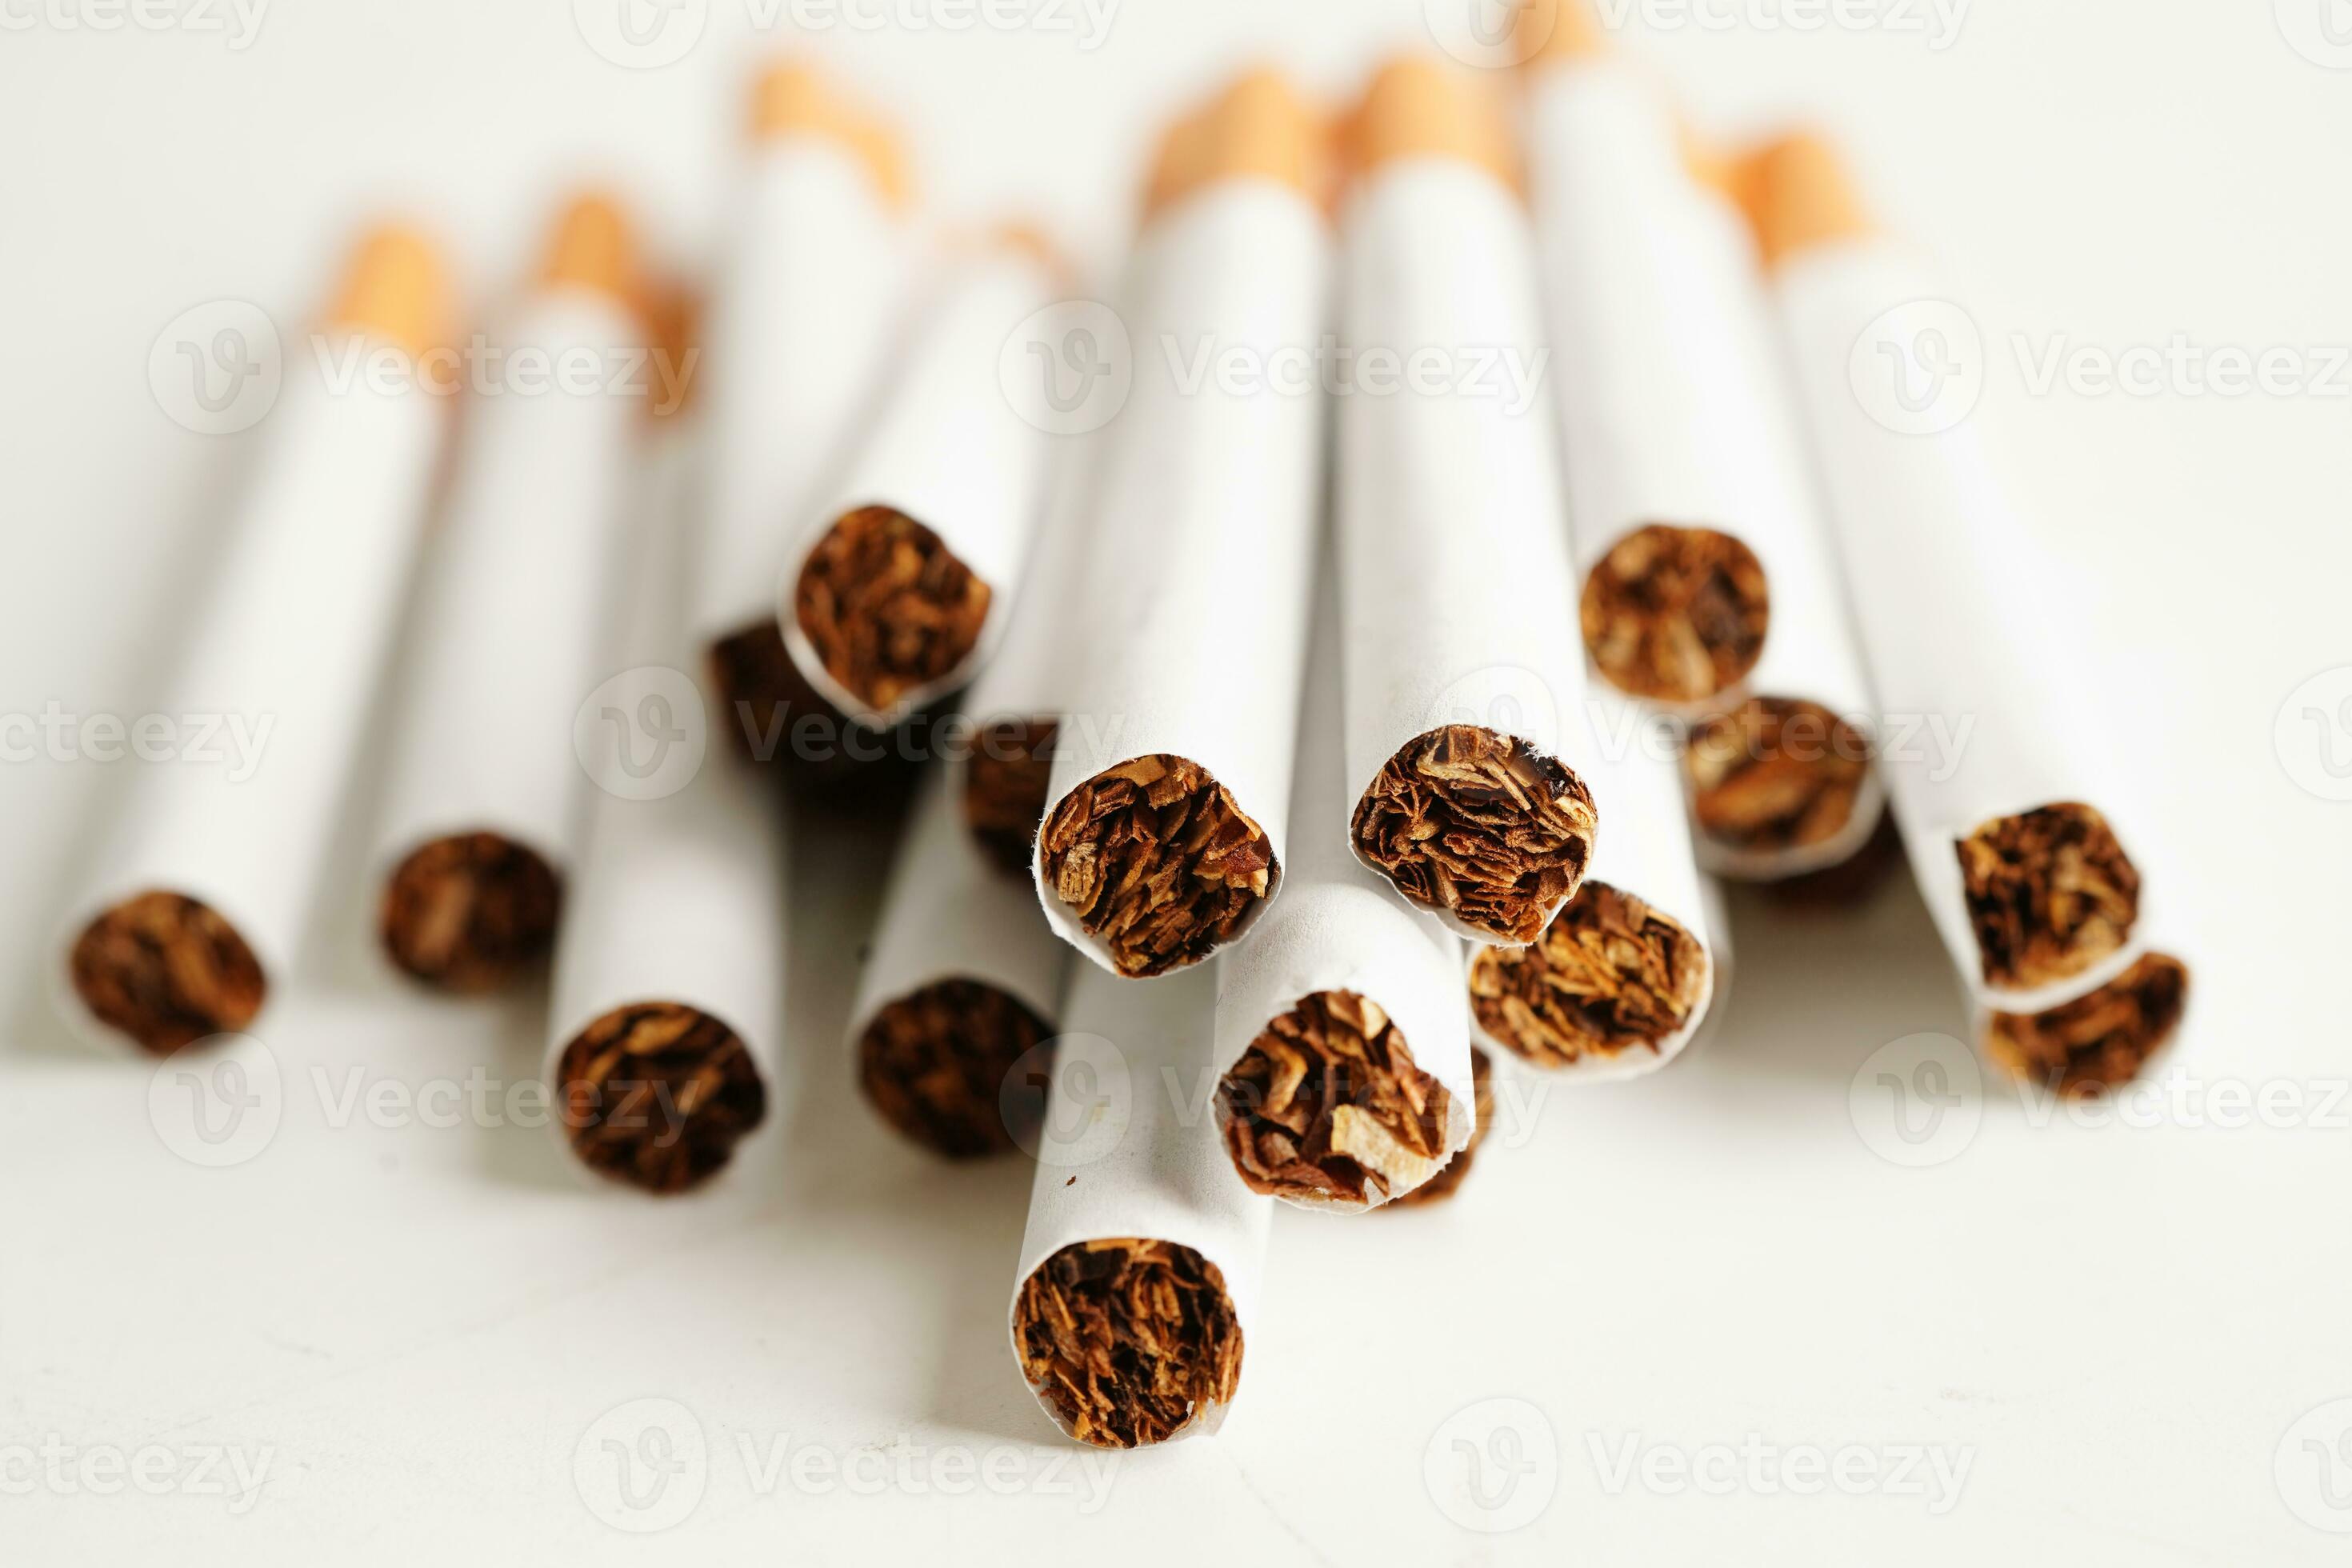 https://static.vecteezy.com/ti/photos-gratuite/p2/24100935-cigarette-tabac-a-rouler-en-papier-avec-tube-filtrant-concept-non-fumeur-photo.jpg